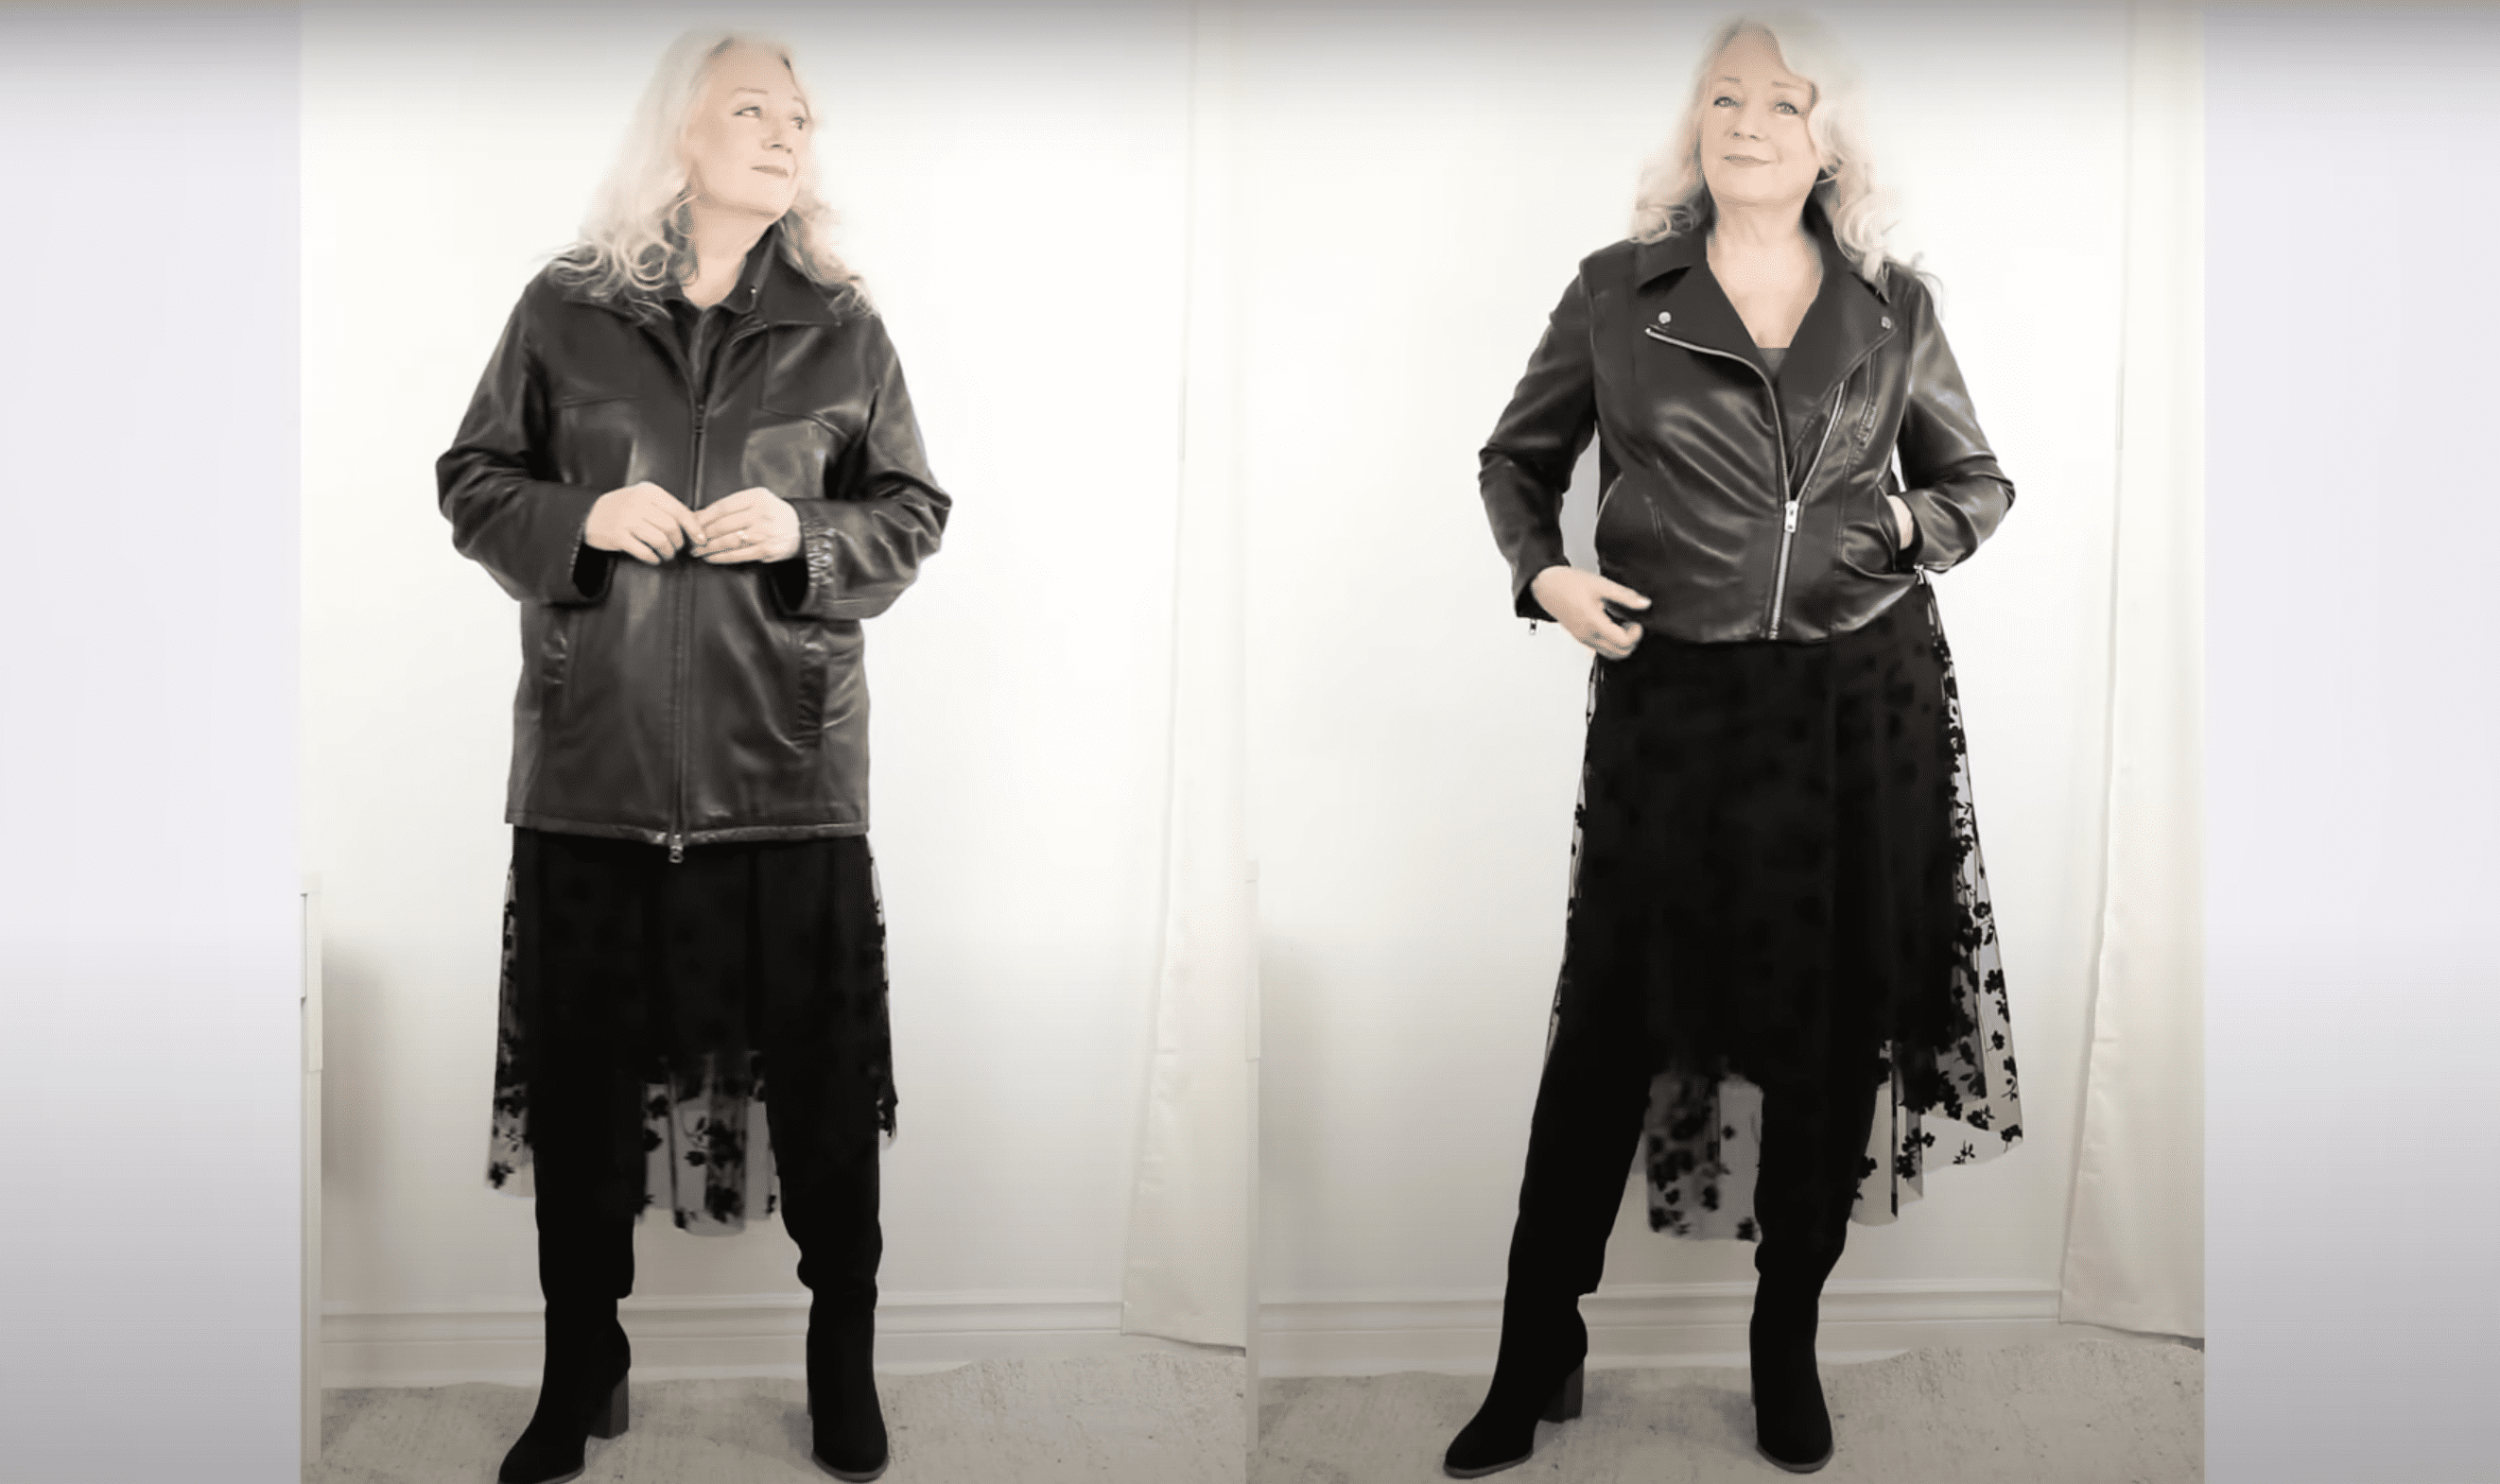 Heather trägt eine alte Lederjacke im Vergleich zu einer neuen Kunstlederjacke mit moderner Ausstrahlung | Quelle: YouTube.com/Awesome over 50